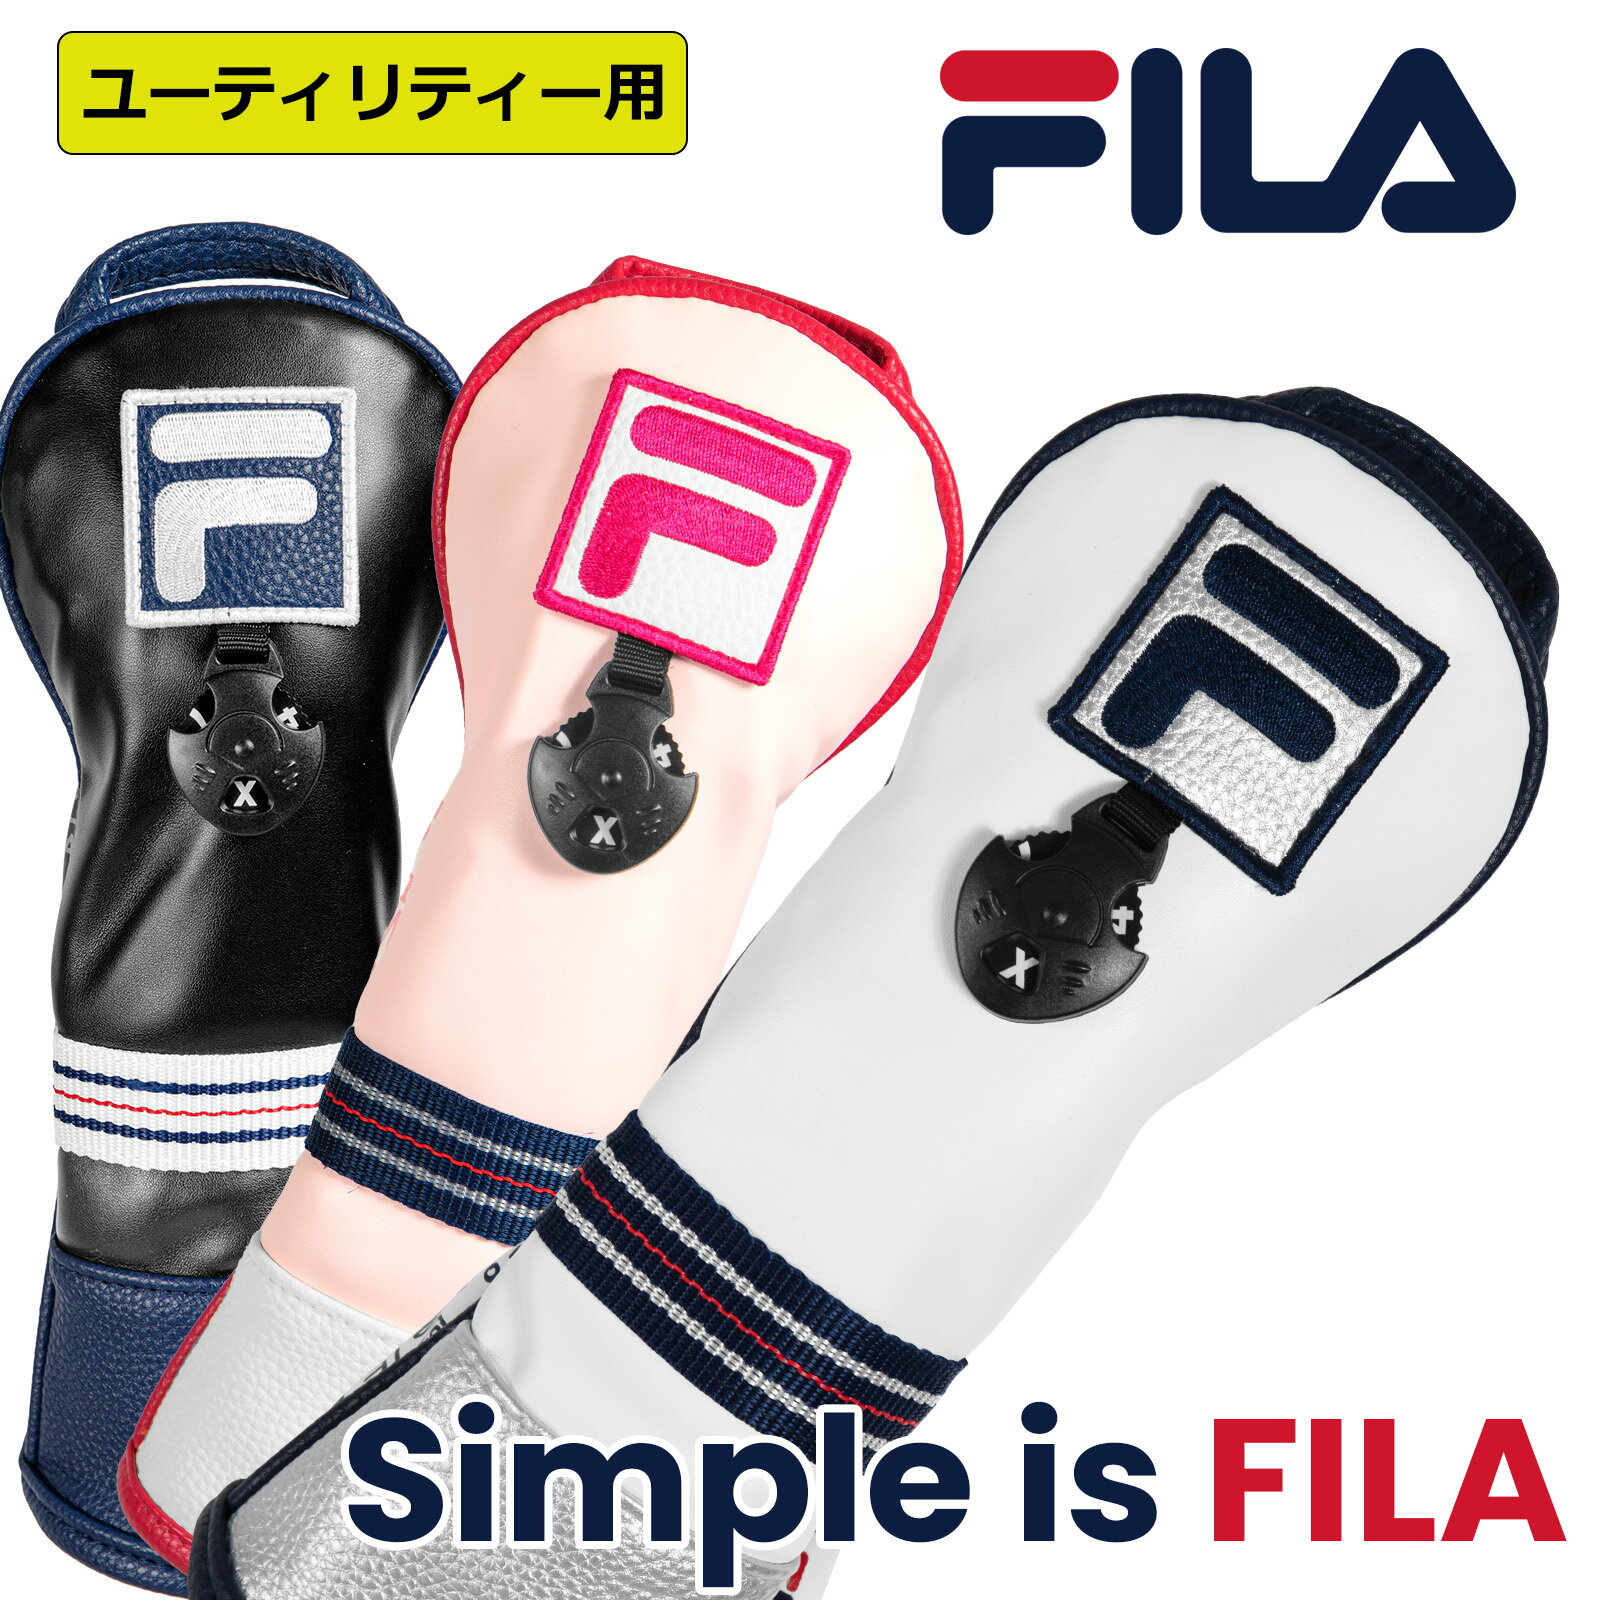 ゴルフ 有名ブランド FILA ユーティリティー用 クッション性のあるヘッドカバー メンズレディース兼用 もふもふのソフトな触り心地 どんなゴルフバッグにも合う ヘッド保護 シンプルなソックス…